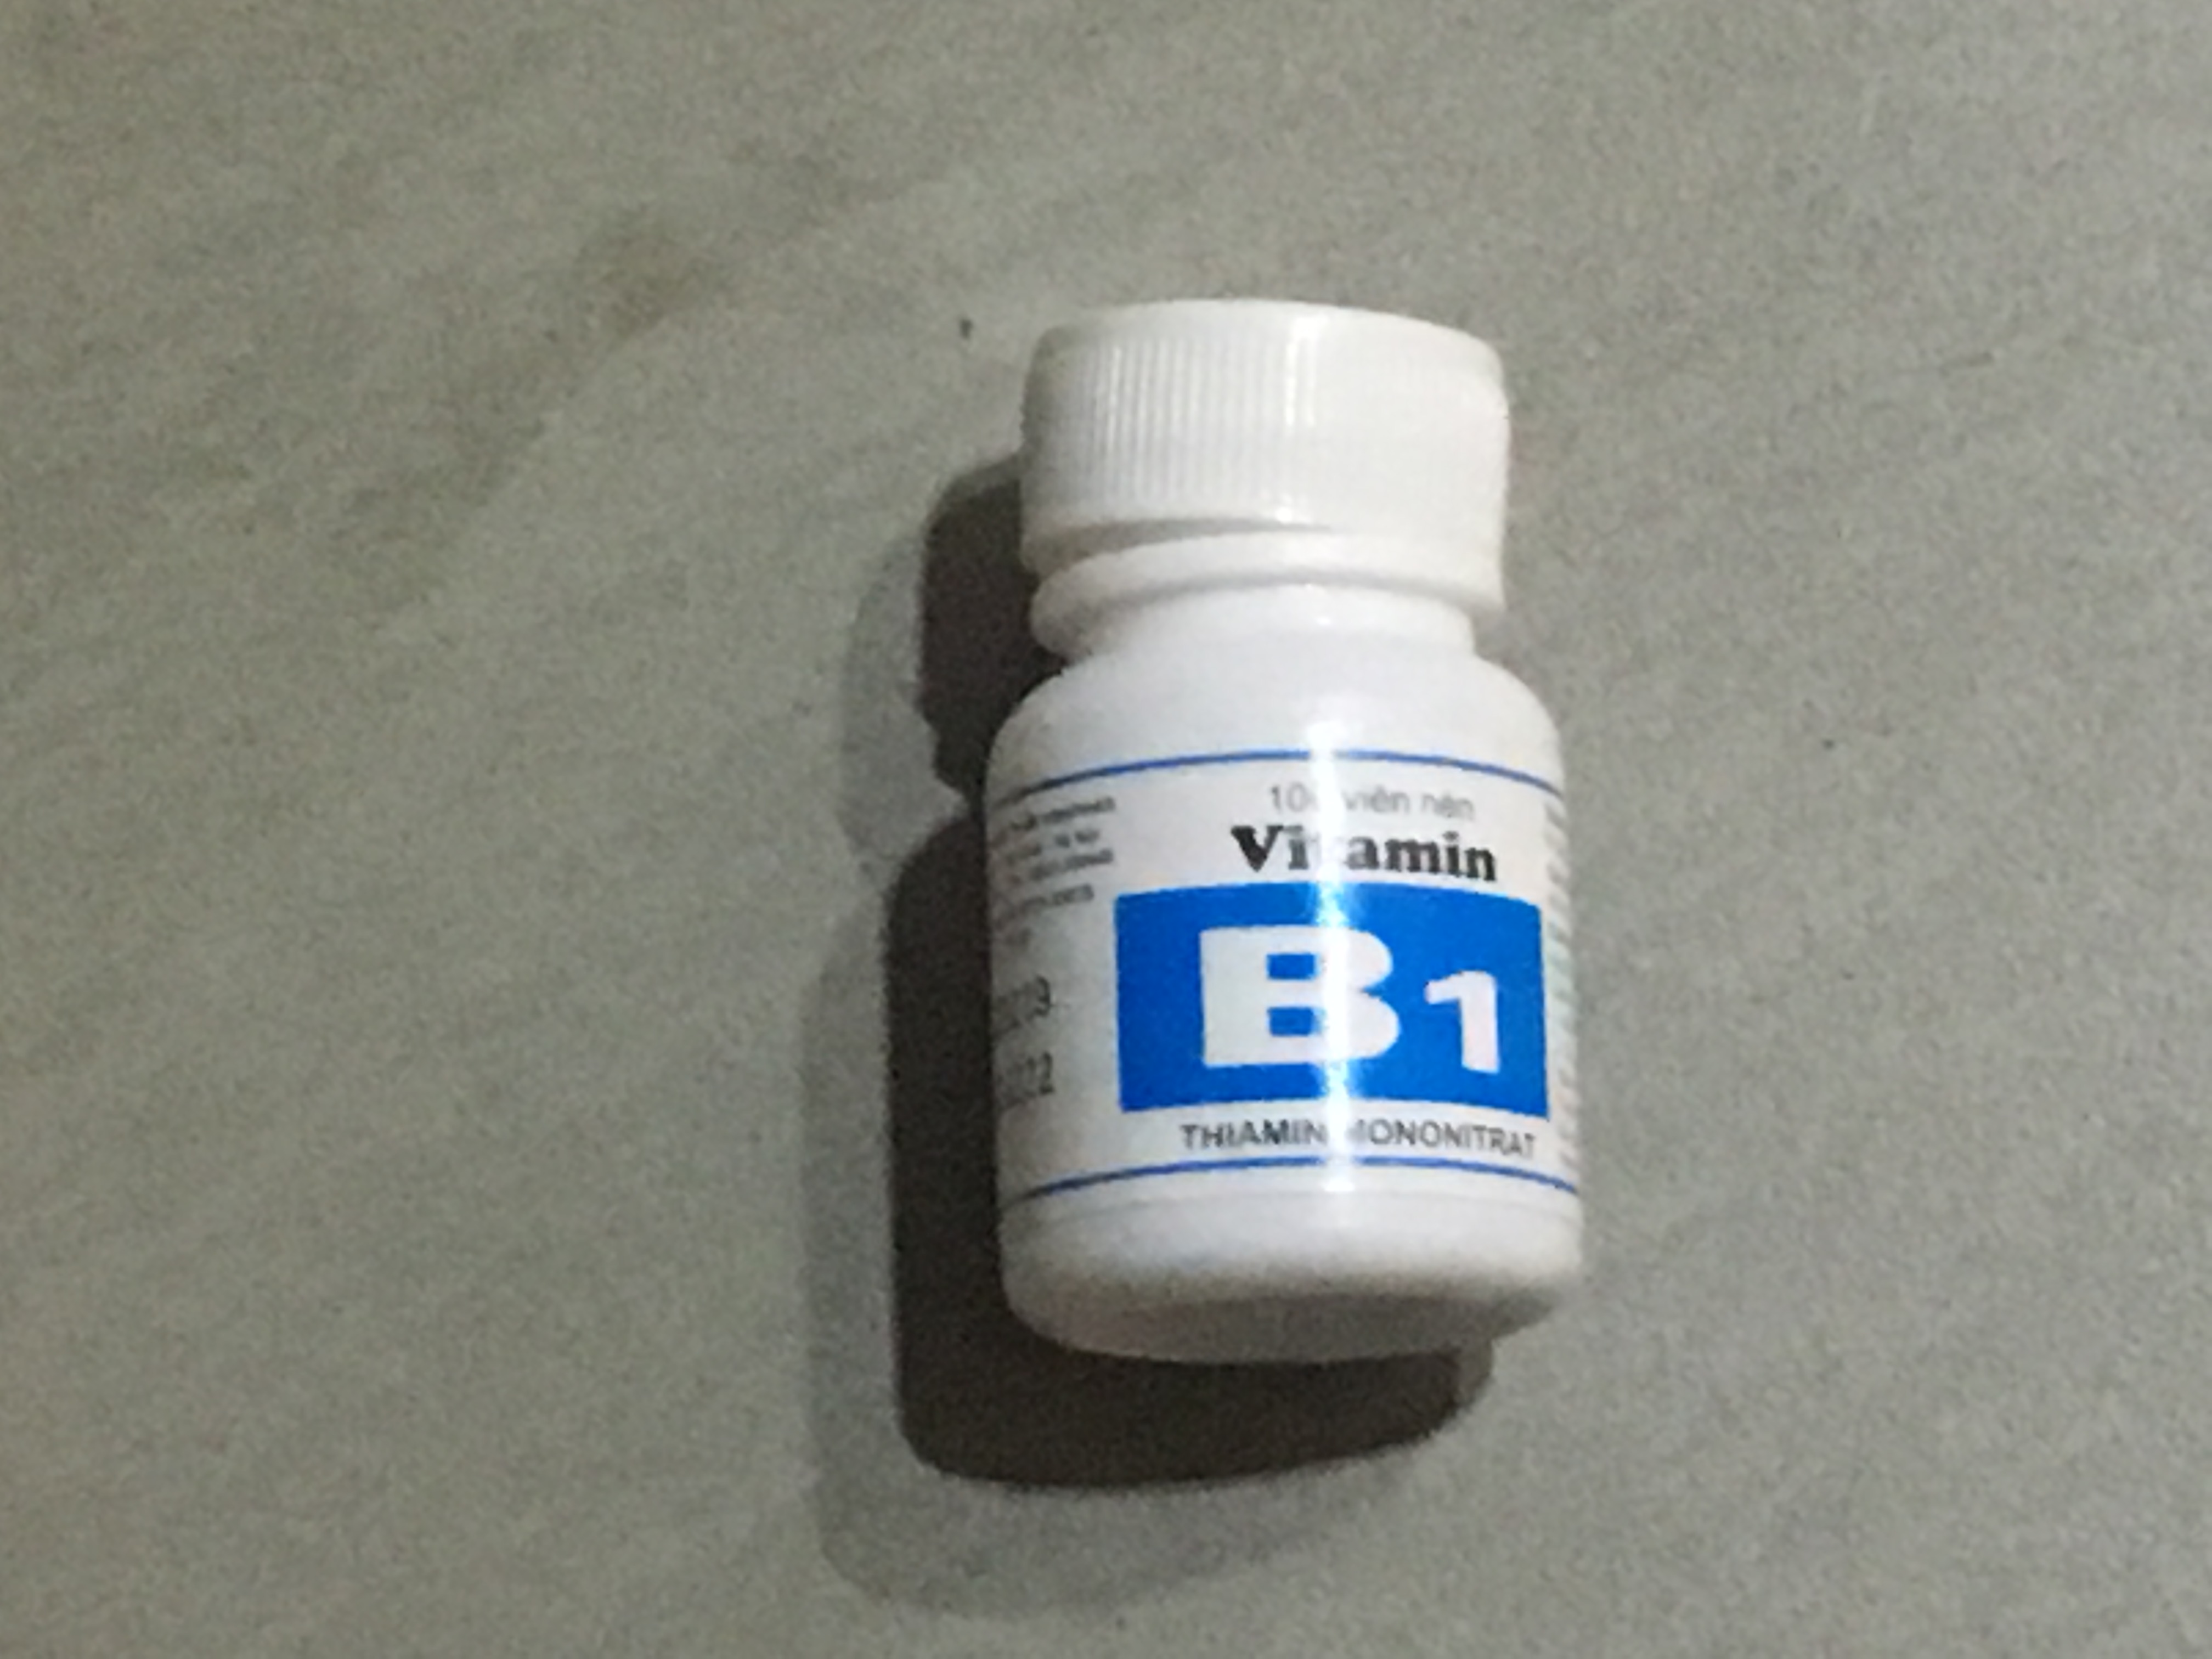 Liều lượng và thời gian sử dụng vitamin B1 trong điều trị bệnh có liên quan đến thiếu vitamin B1?
